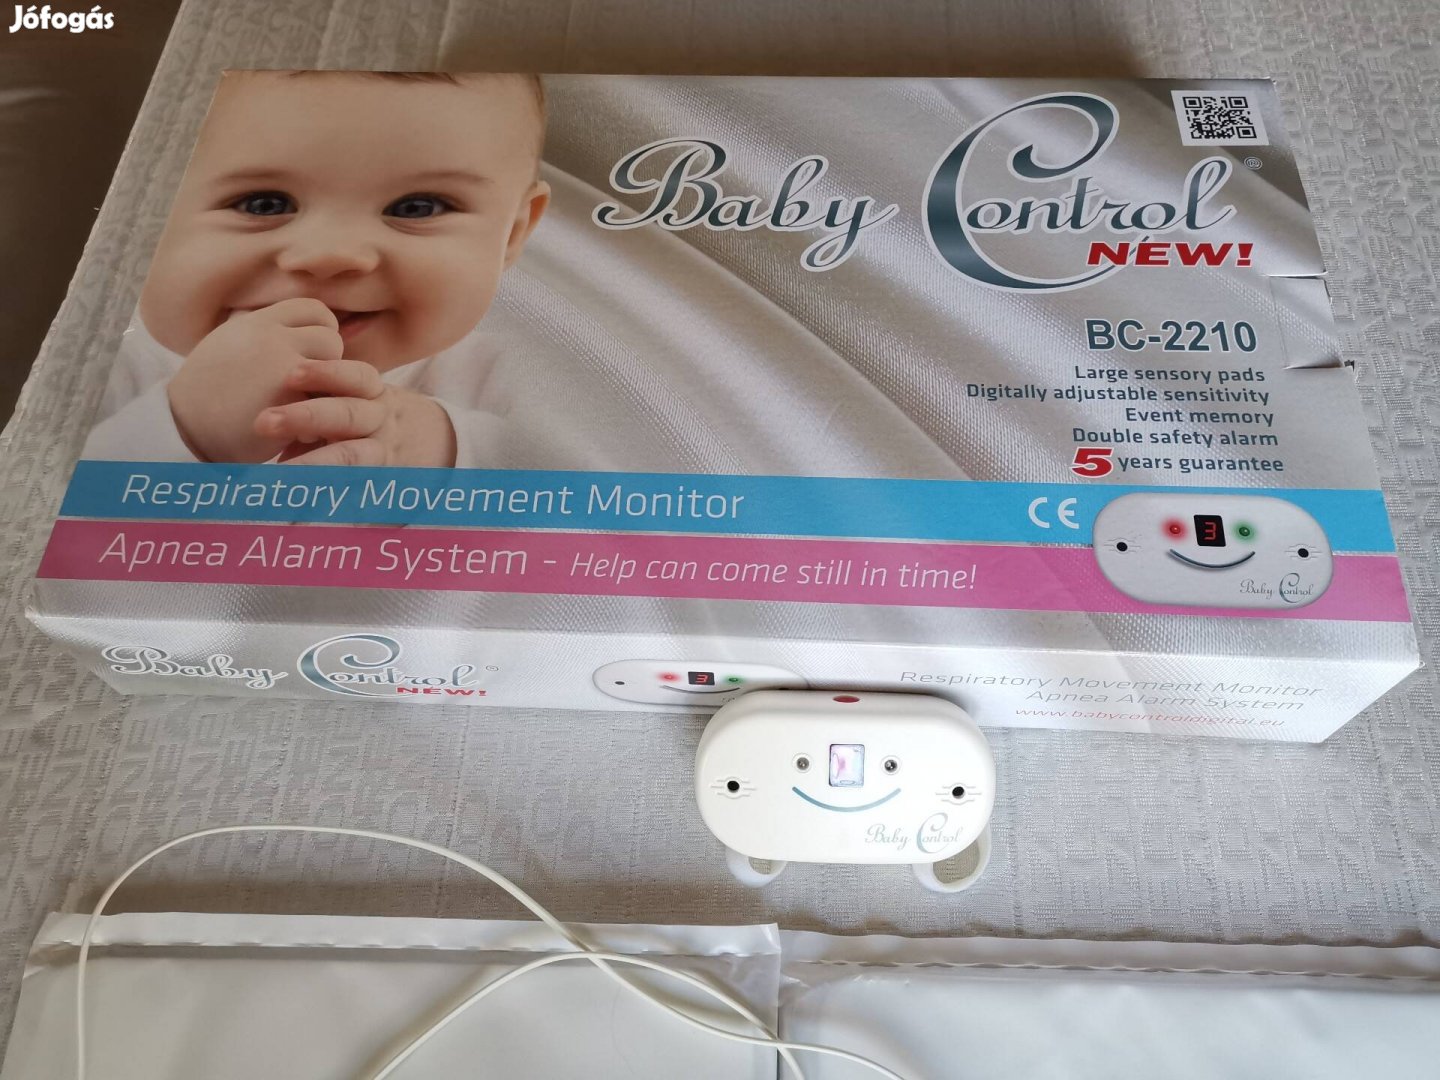 Babycontrolbc-2210 légzésfigyelő 2 lapos